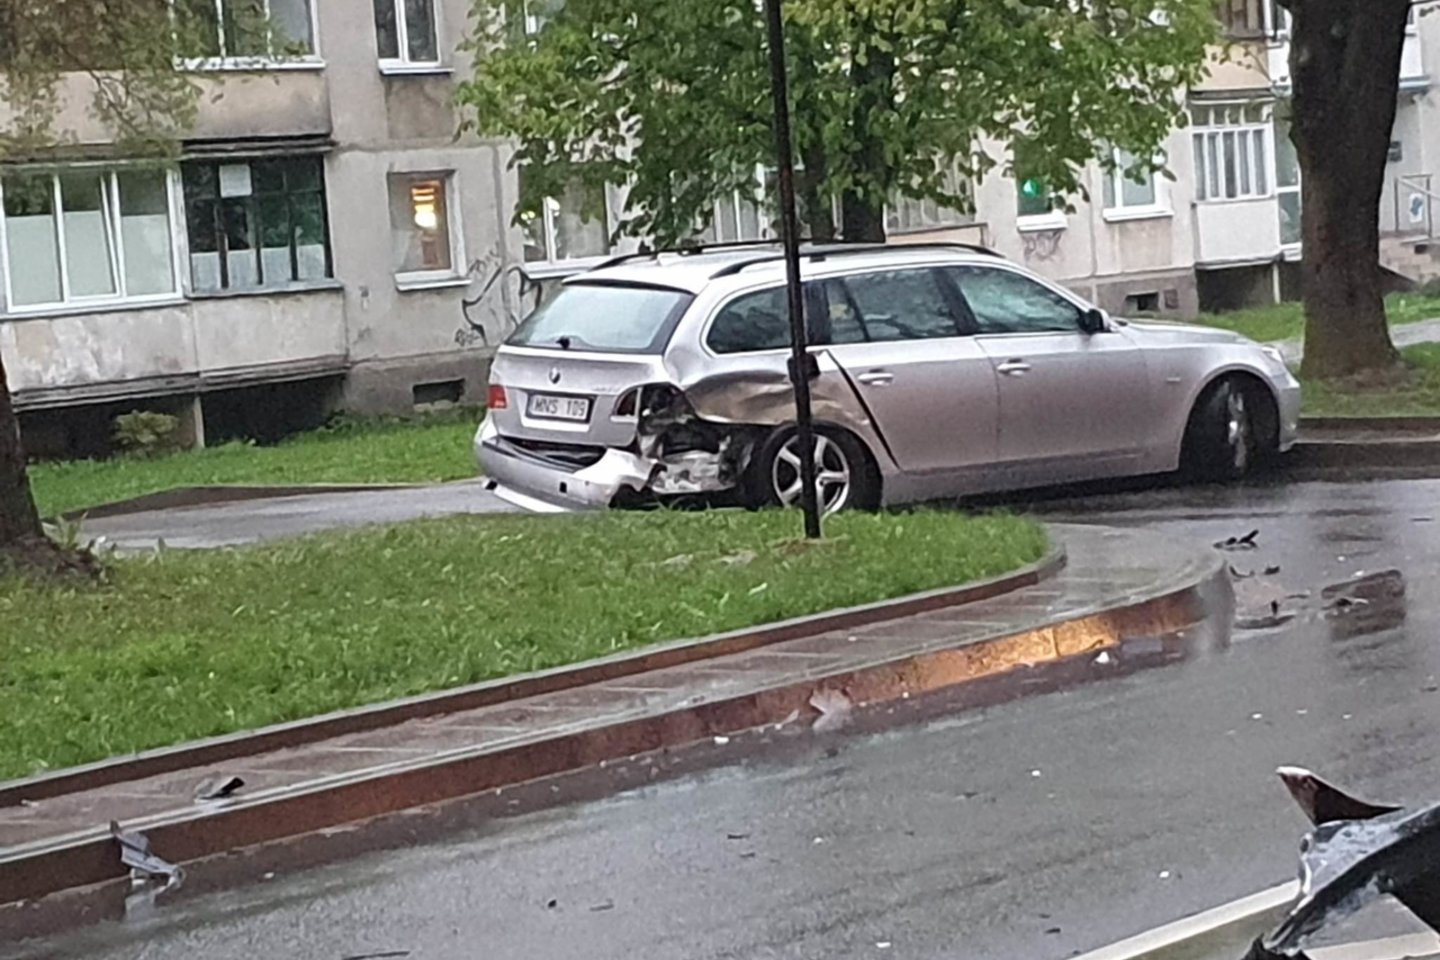 Vilniuje per eismo įvyki susidūrė 3 automobiliai, vienas iš vairuotojų prie vairo sėdo būdamas girtas.<br>Įvykio liudininko nuotr.